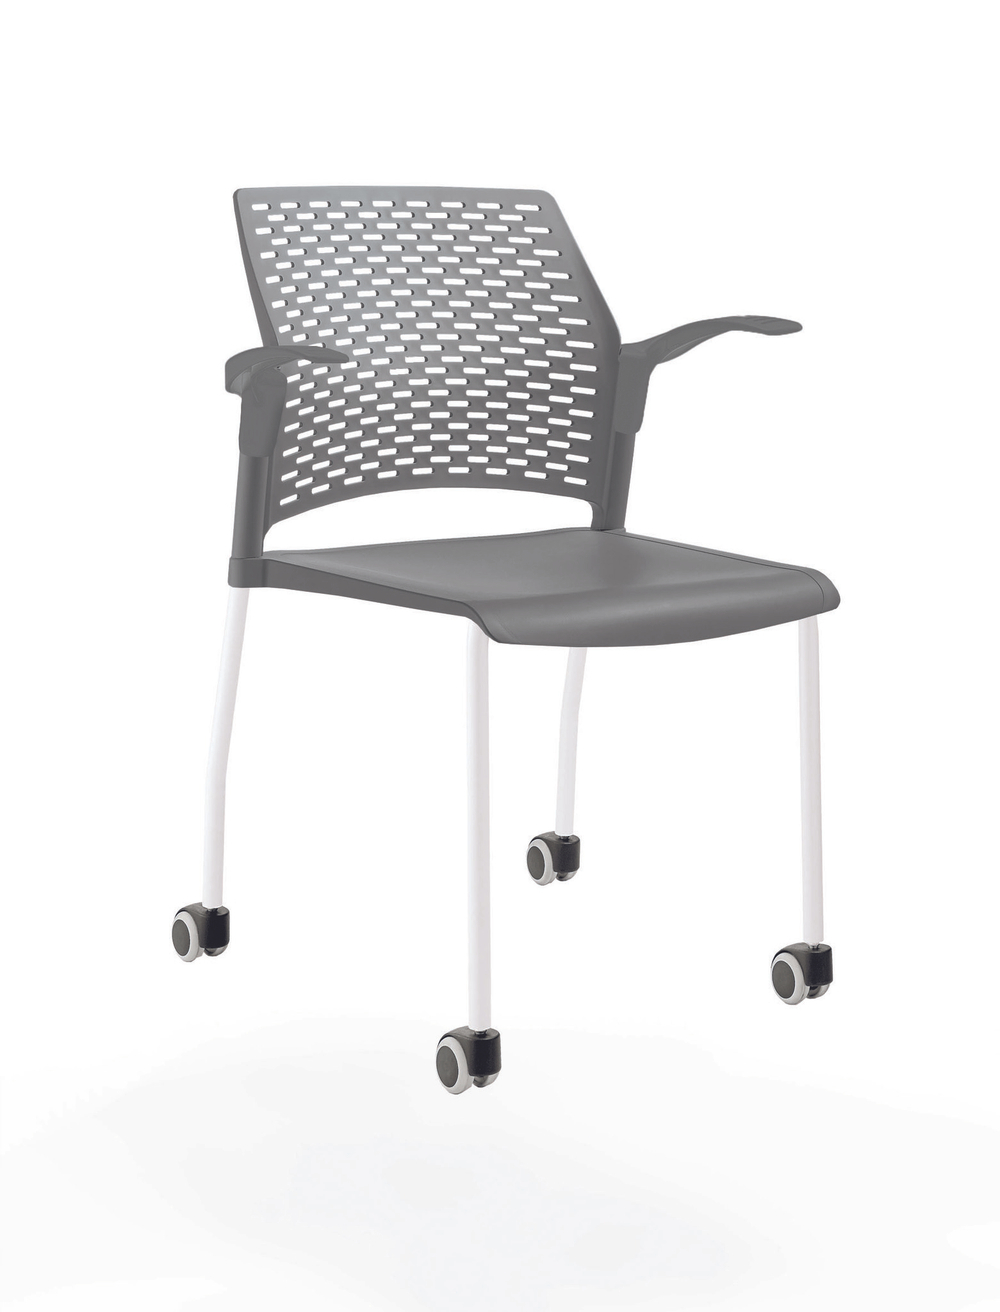 стул Rewind на 4 ногах и колесах, каркас белый, пластик серый, с открытыми подлокотниками, сиденье и спинка без обивки